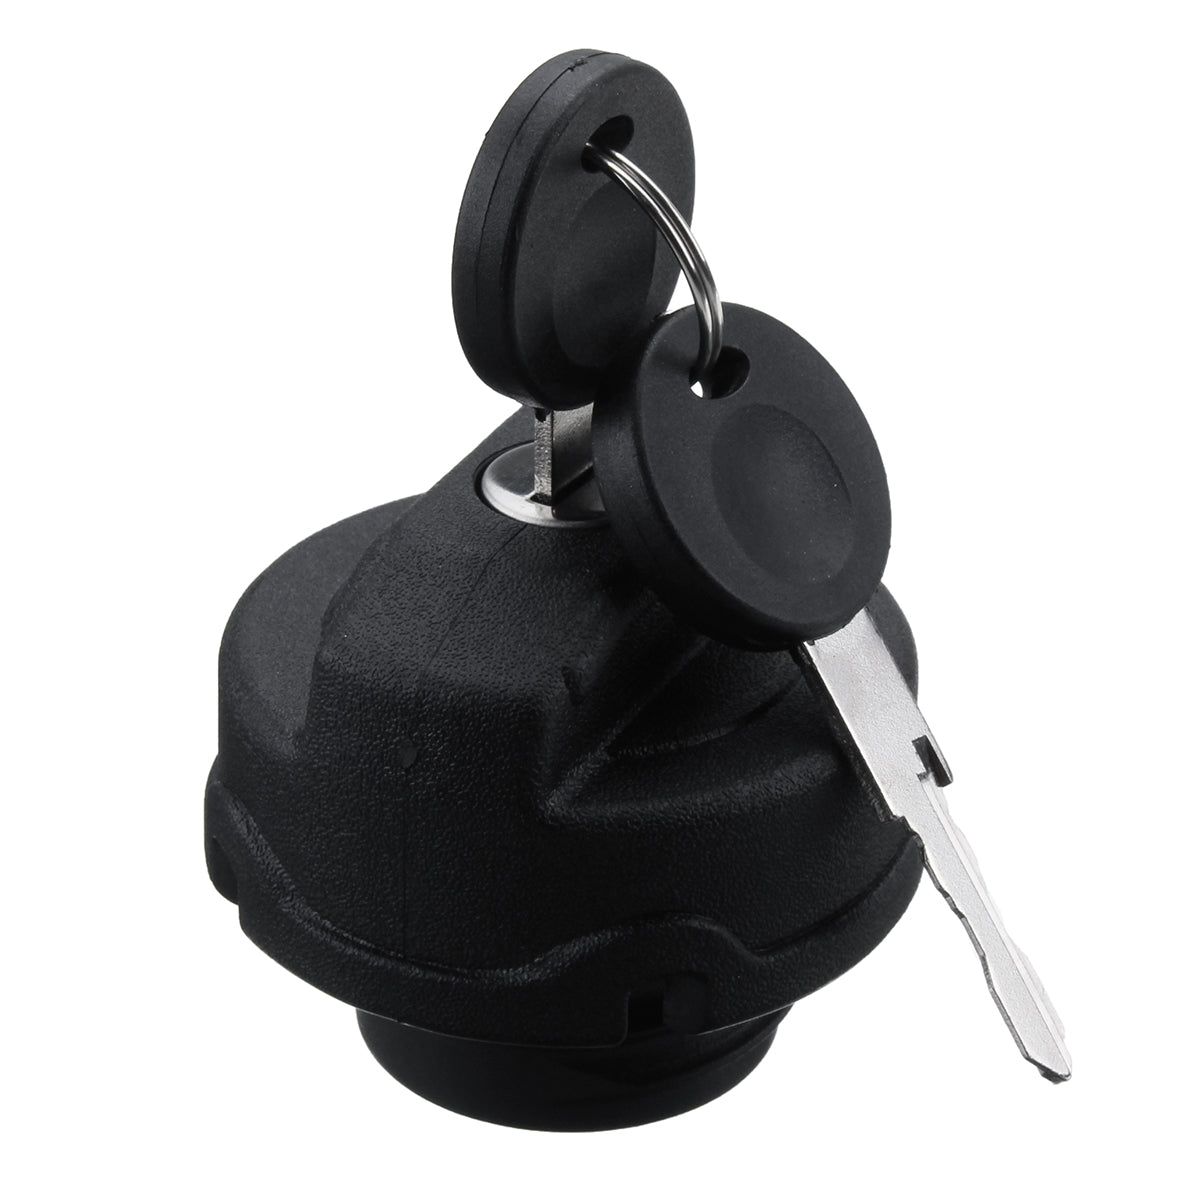 Black Black Fuel Tank Cap Locking + 2 Keys for Vauxhall Zafira Petrol Diesel 1998-2016